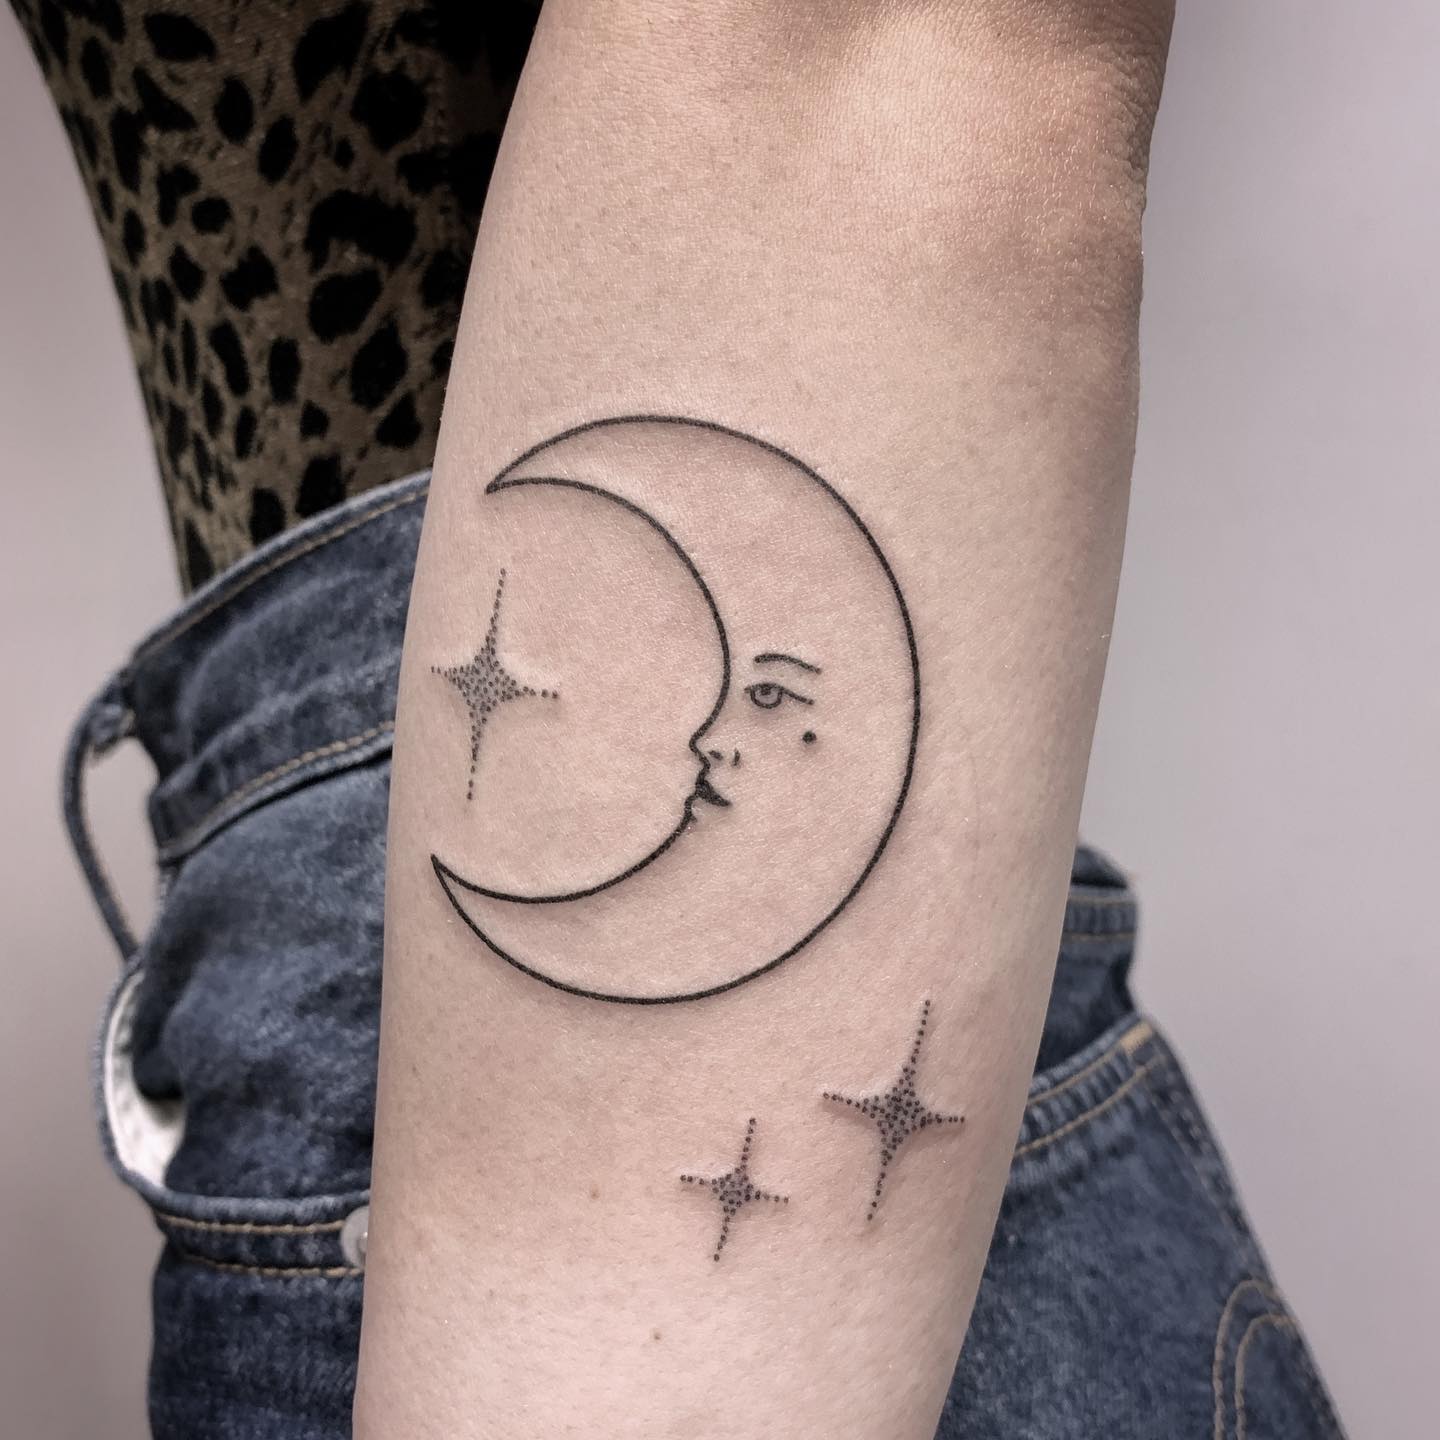 Tatuaje de luna en el brazo